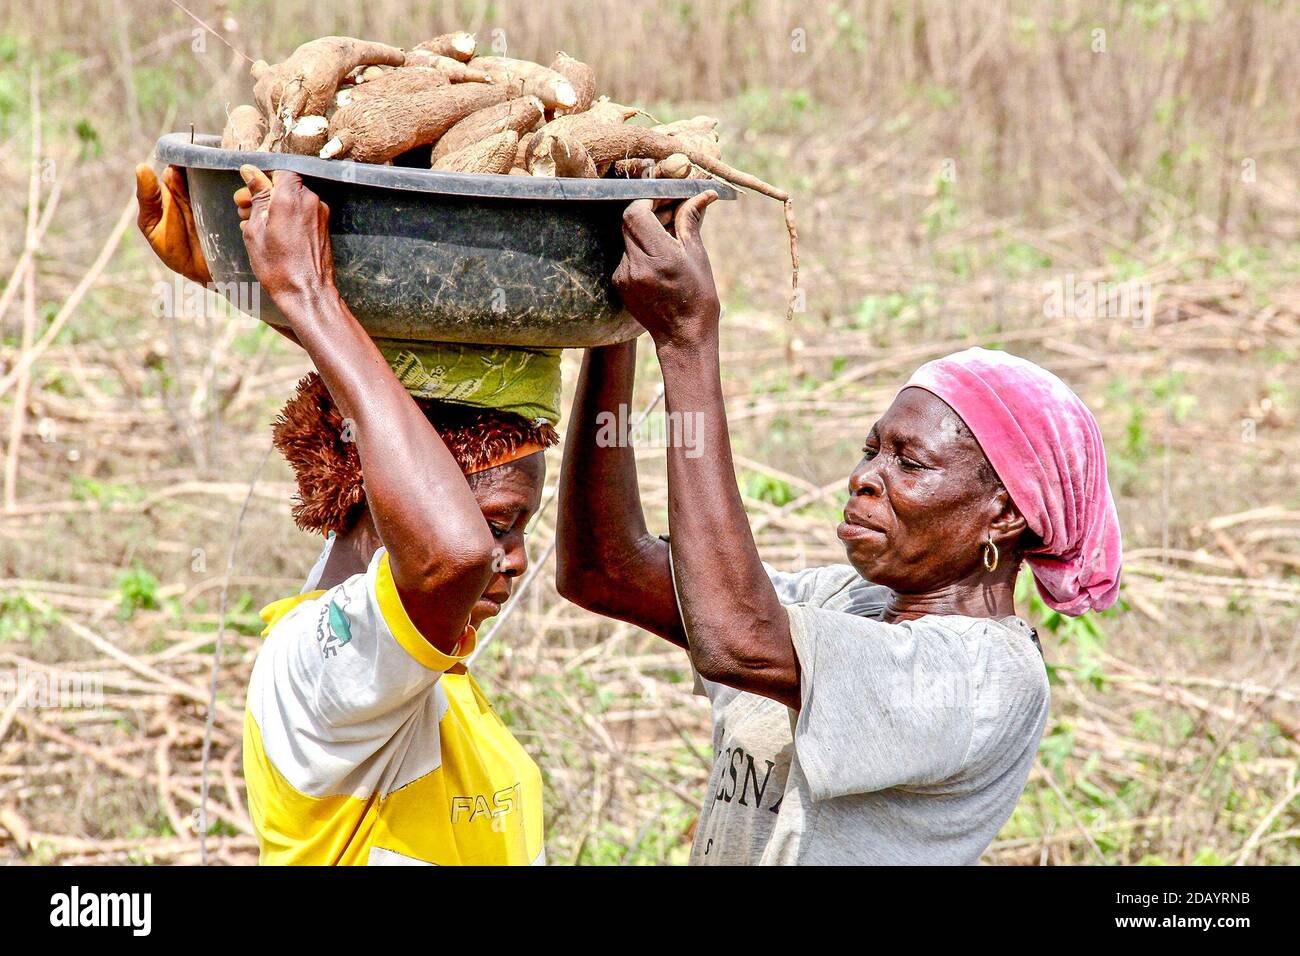 Eine Farmarbeiterin in Lalate, einem kleinen Gebiet im Bundesstaat Oyo, Nigeria, hilft einer anderen, eine Schüssel mit Cassava-Wurzeln auf ihren Kopf zu legen, um sie zu einem nahe gelegenen Lastwagen zu transportieren, der sie an eine Verarbeitungsfabrik liefern wird. Stockfoto